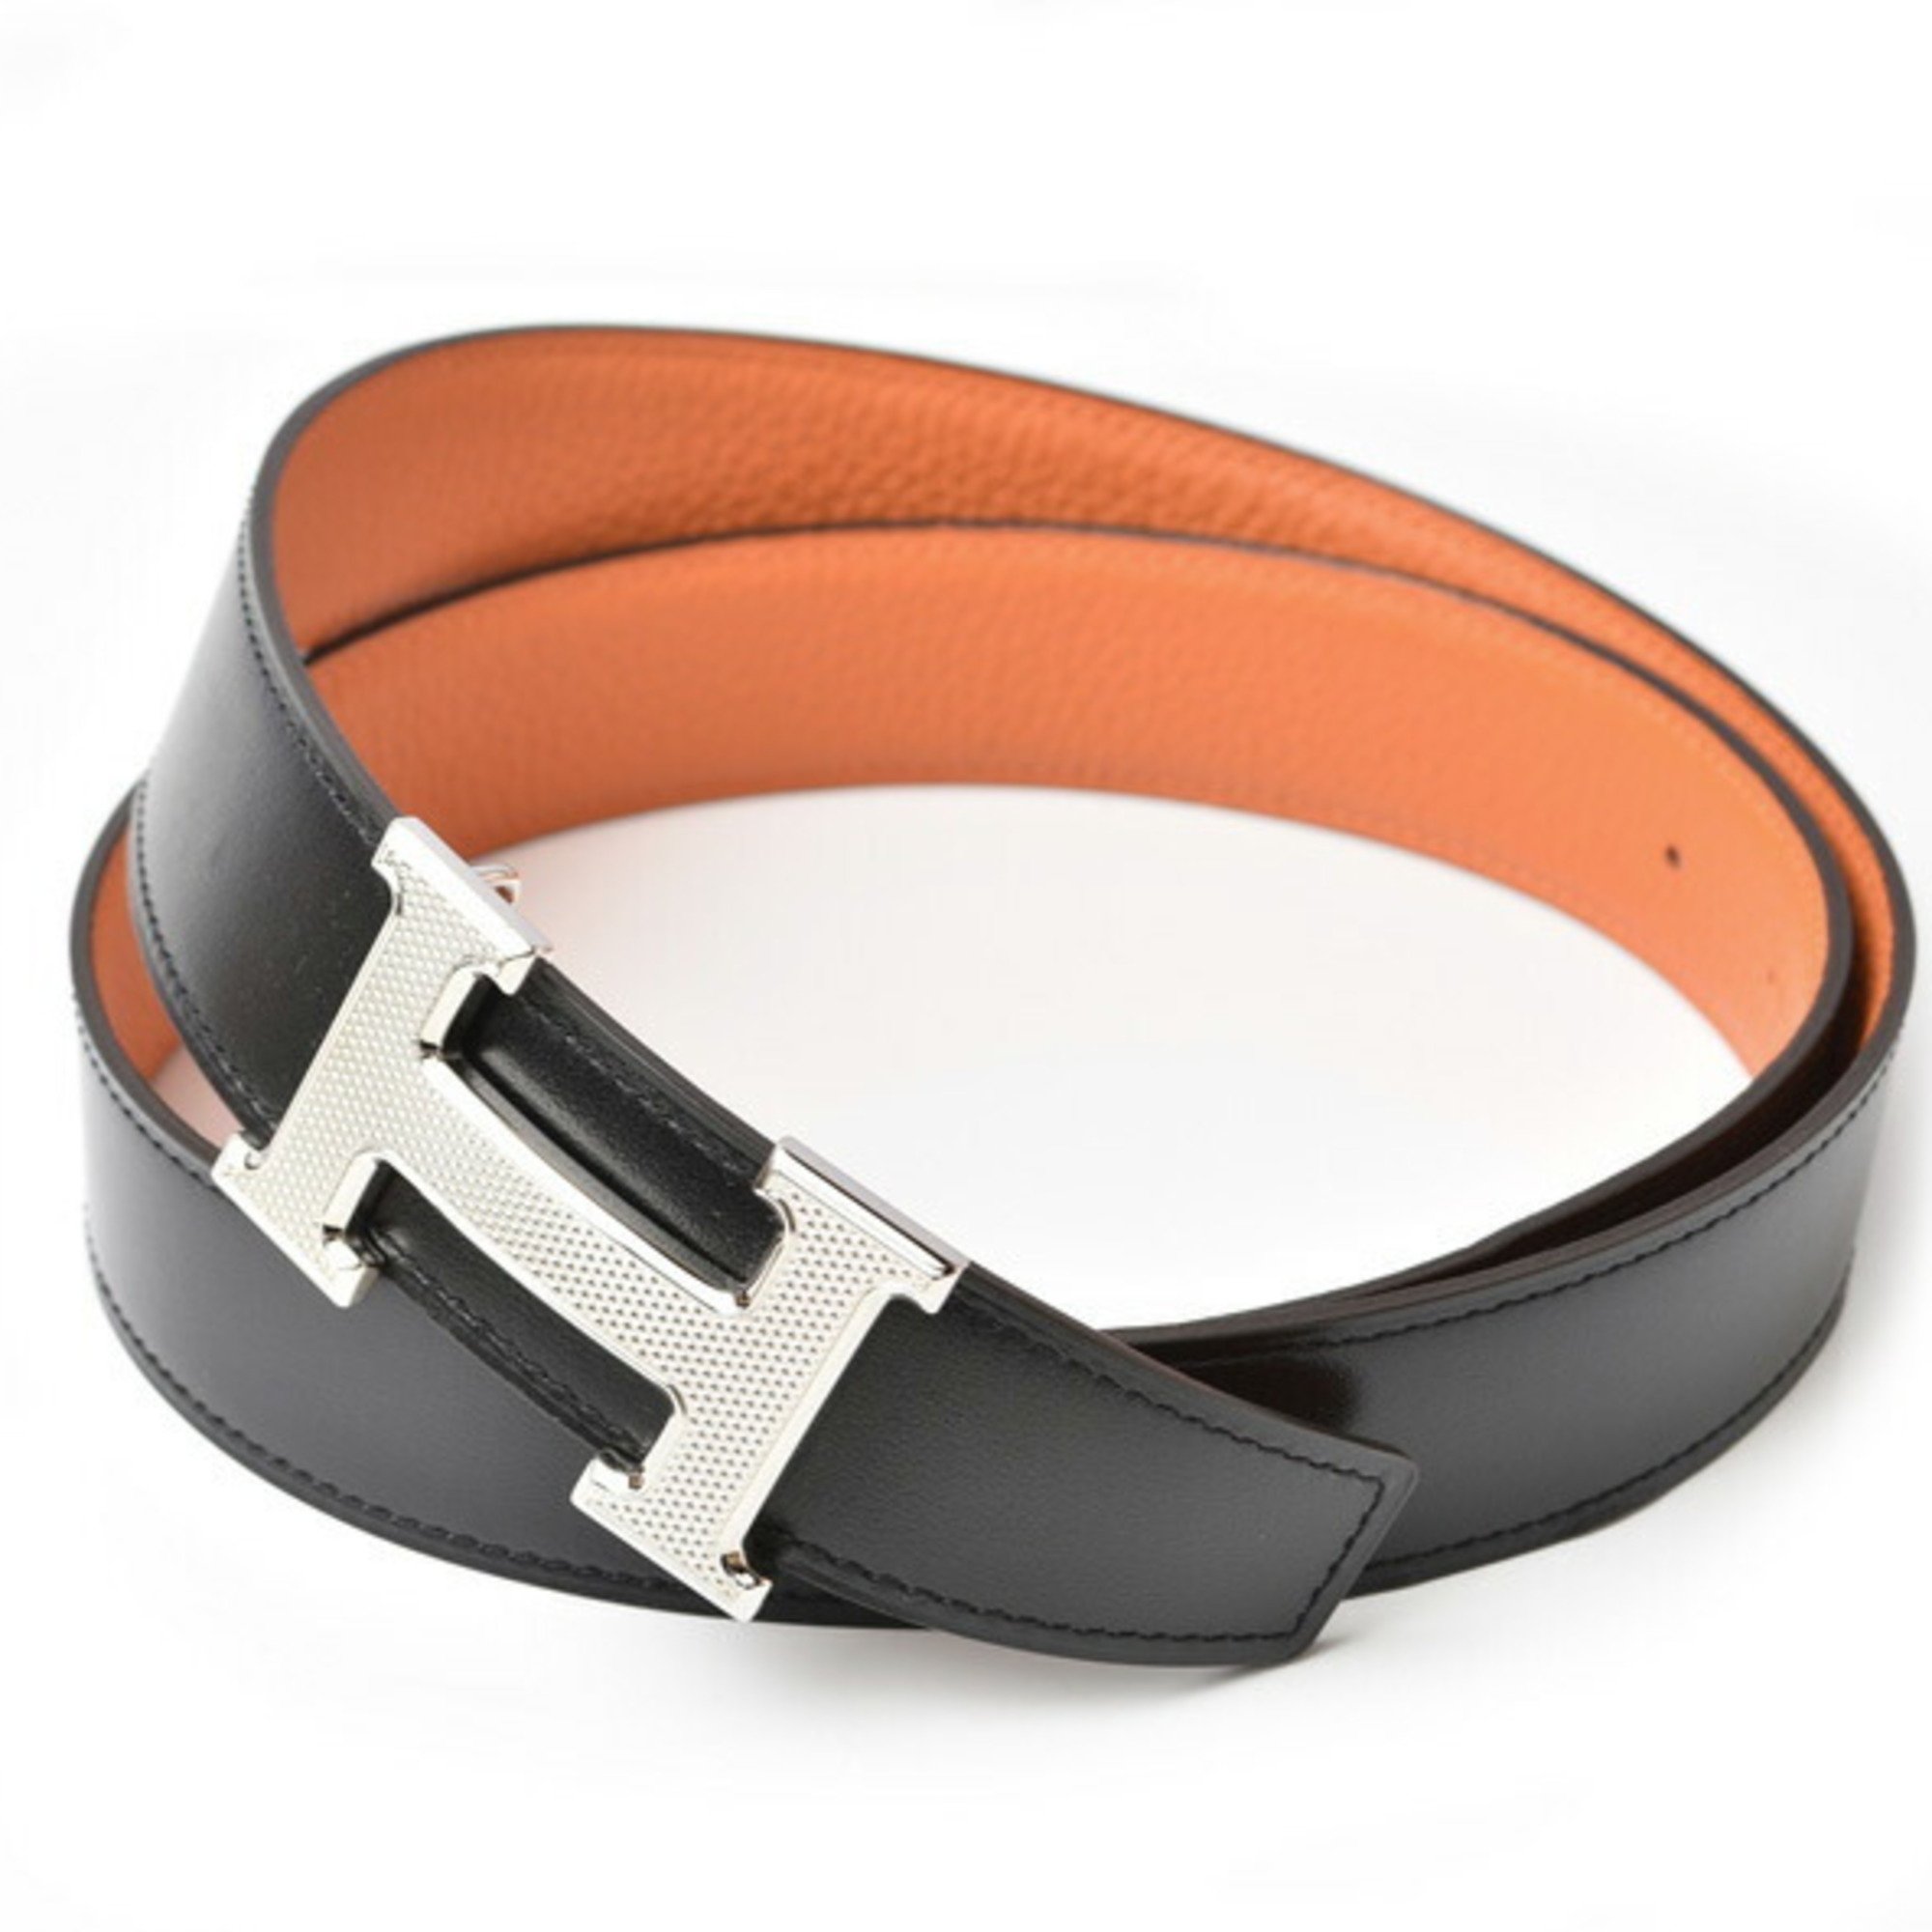 Hermes Belt for Men and Women